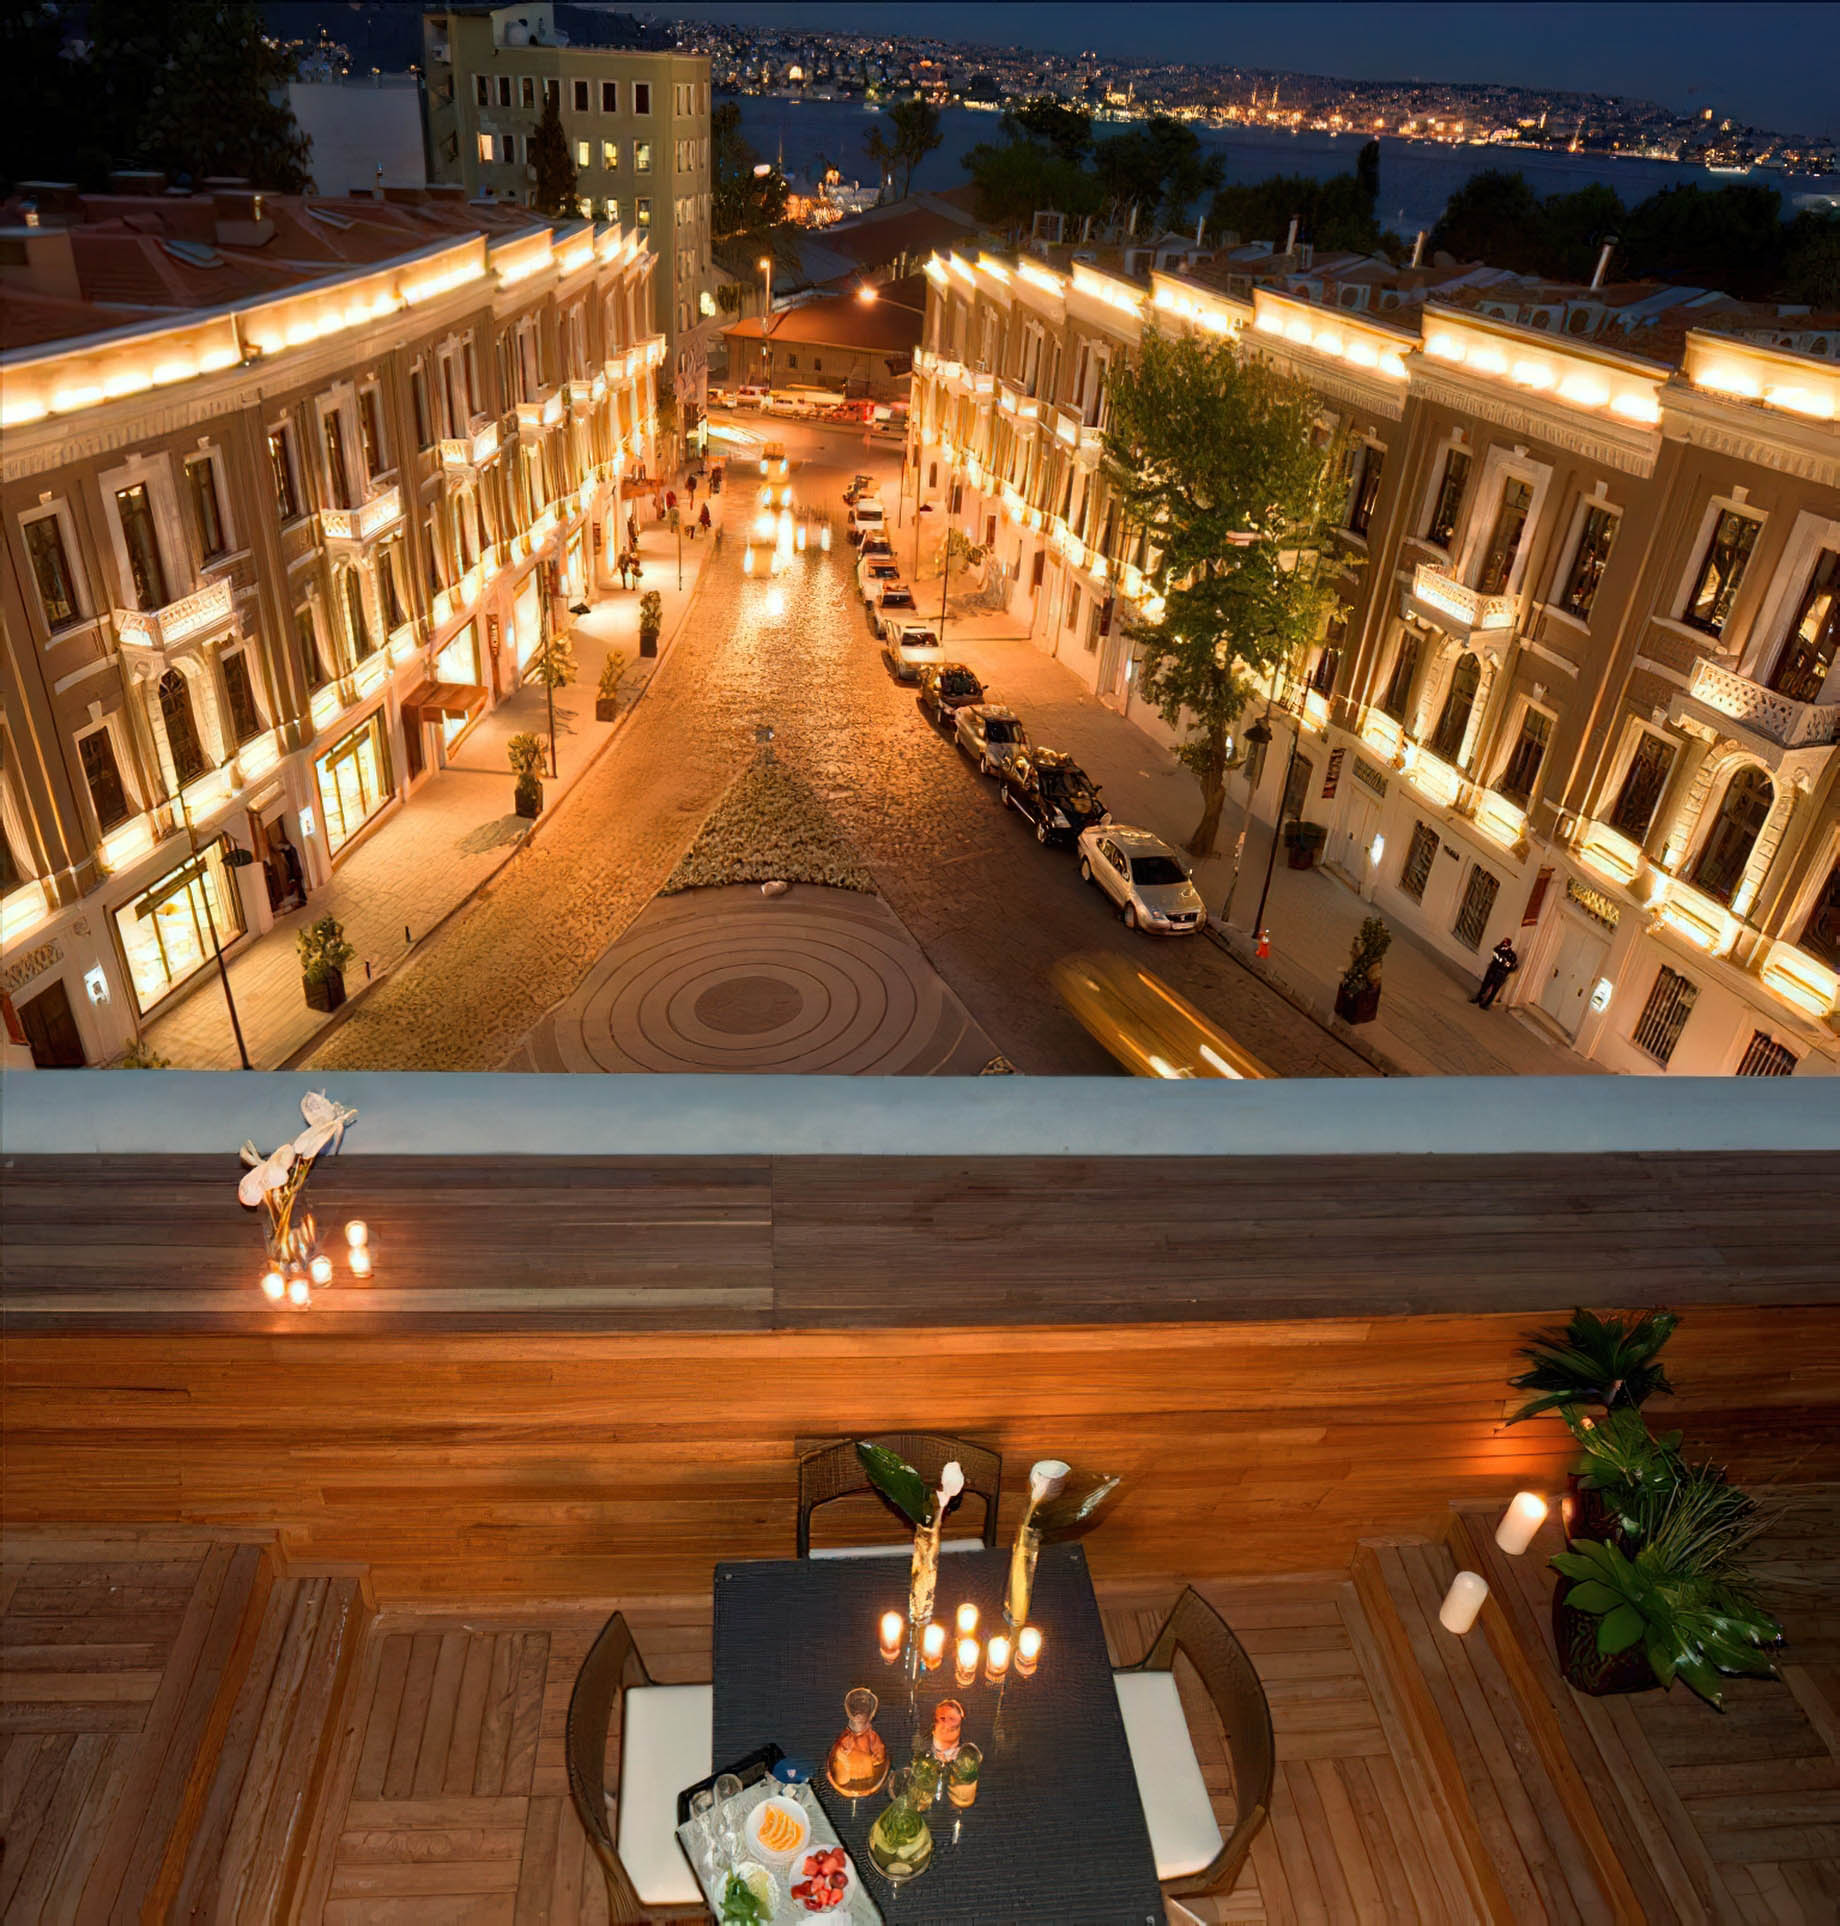 W Istanbul Hotel – Istanbul, Turkey – Night View